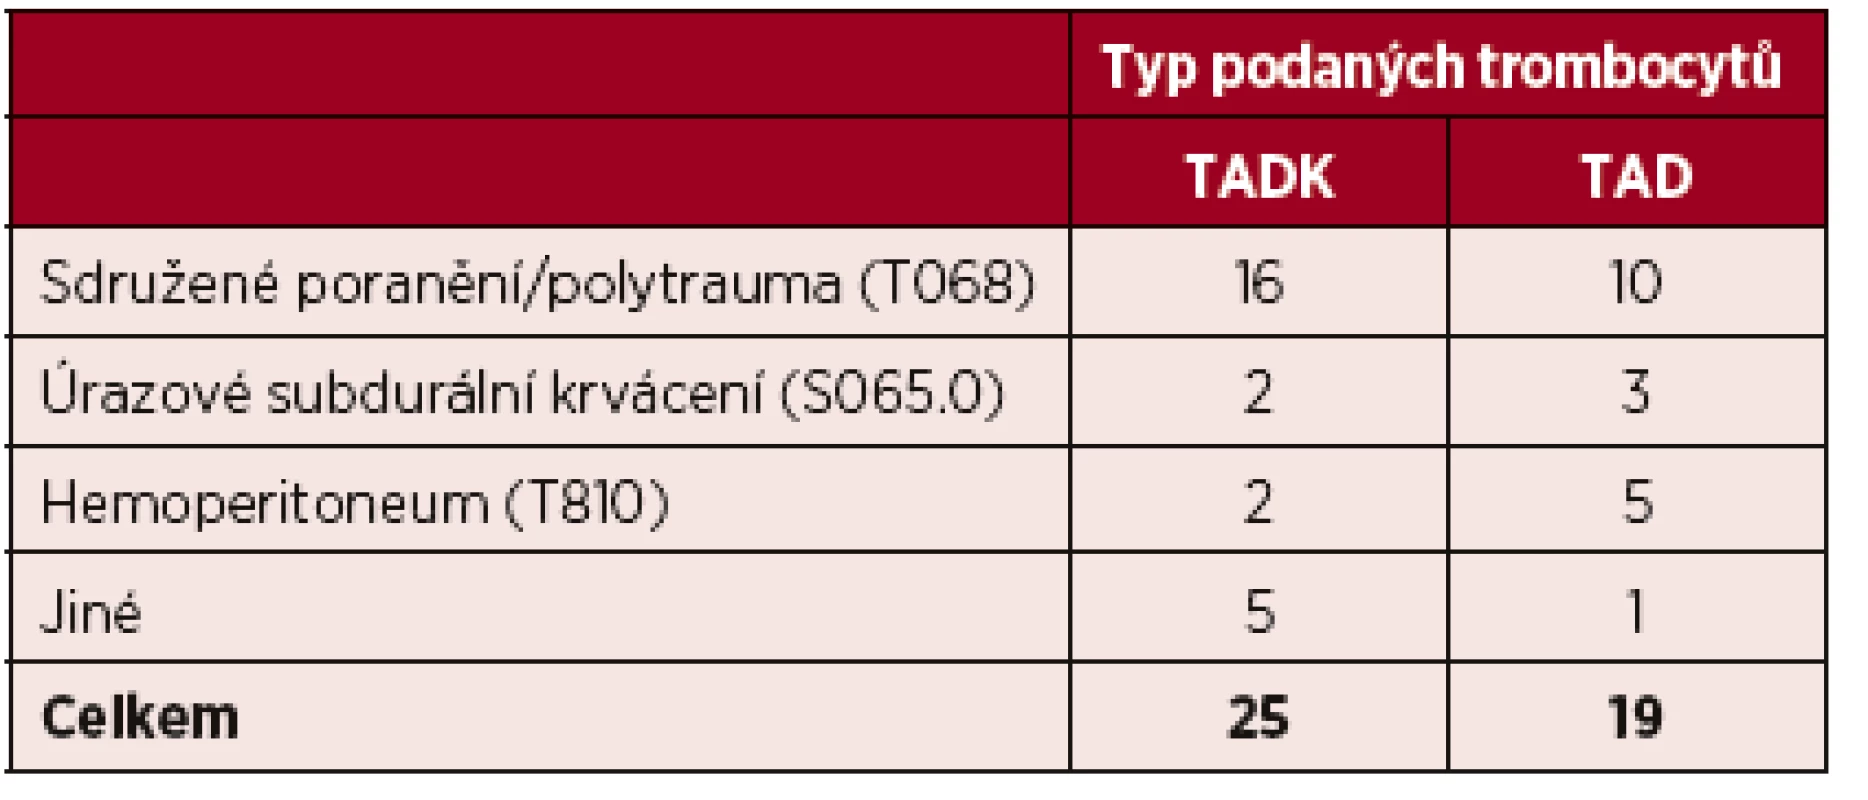 Seznam diagnóz podle MKN u transfundovaných pacientů